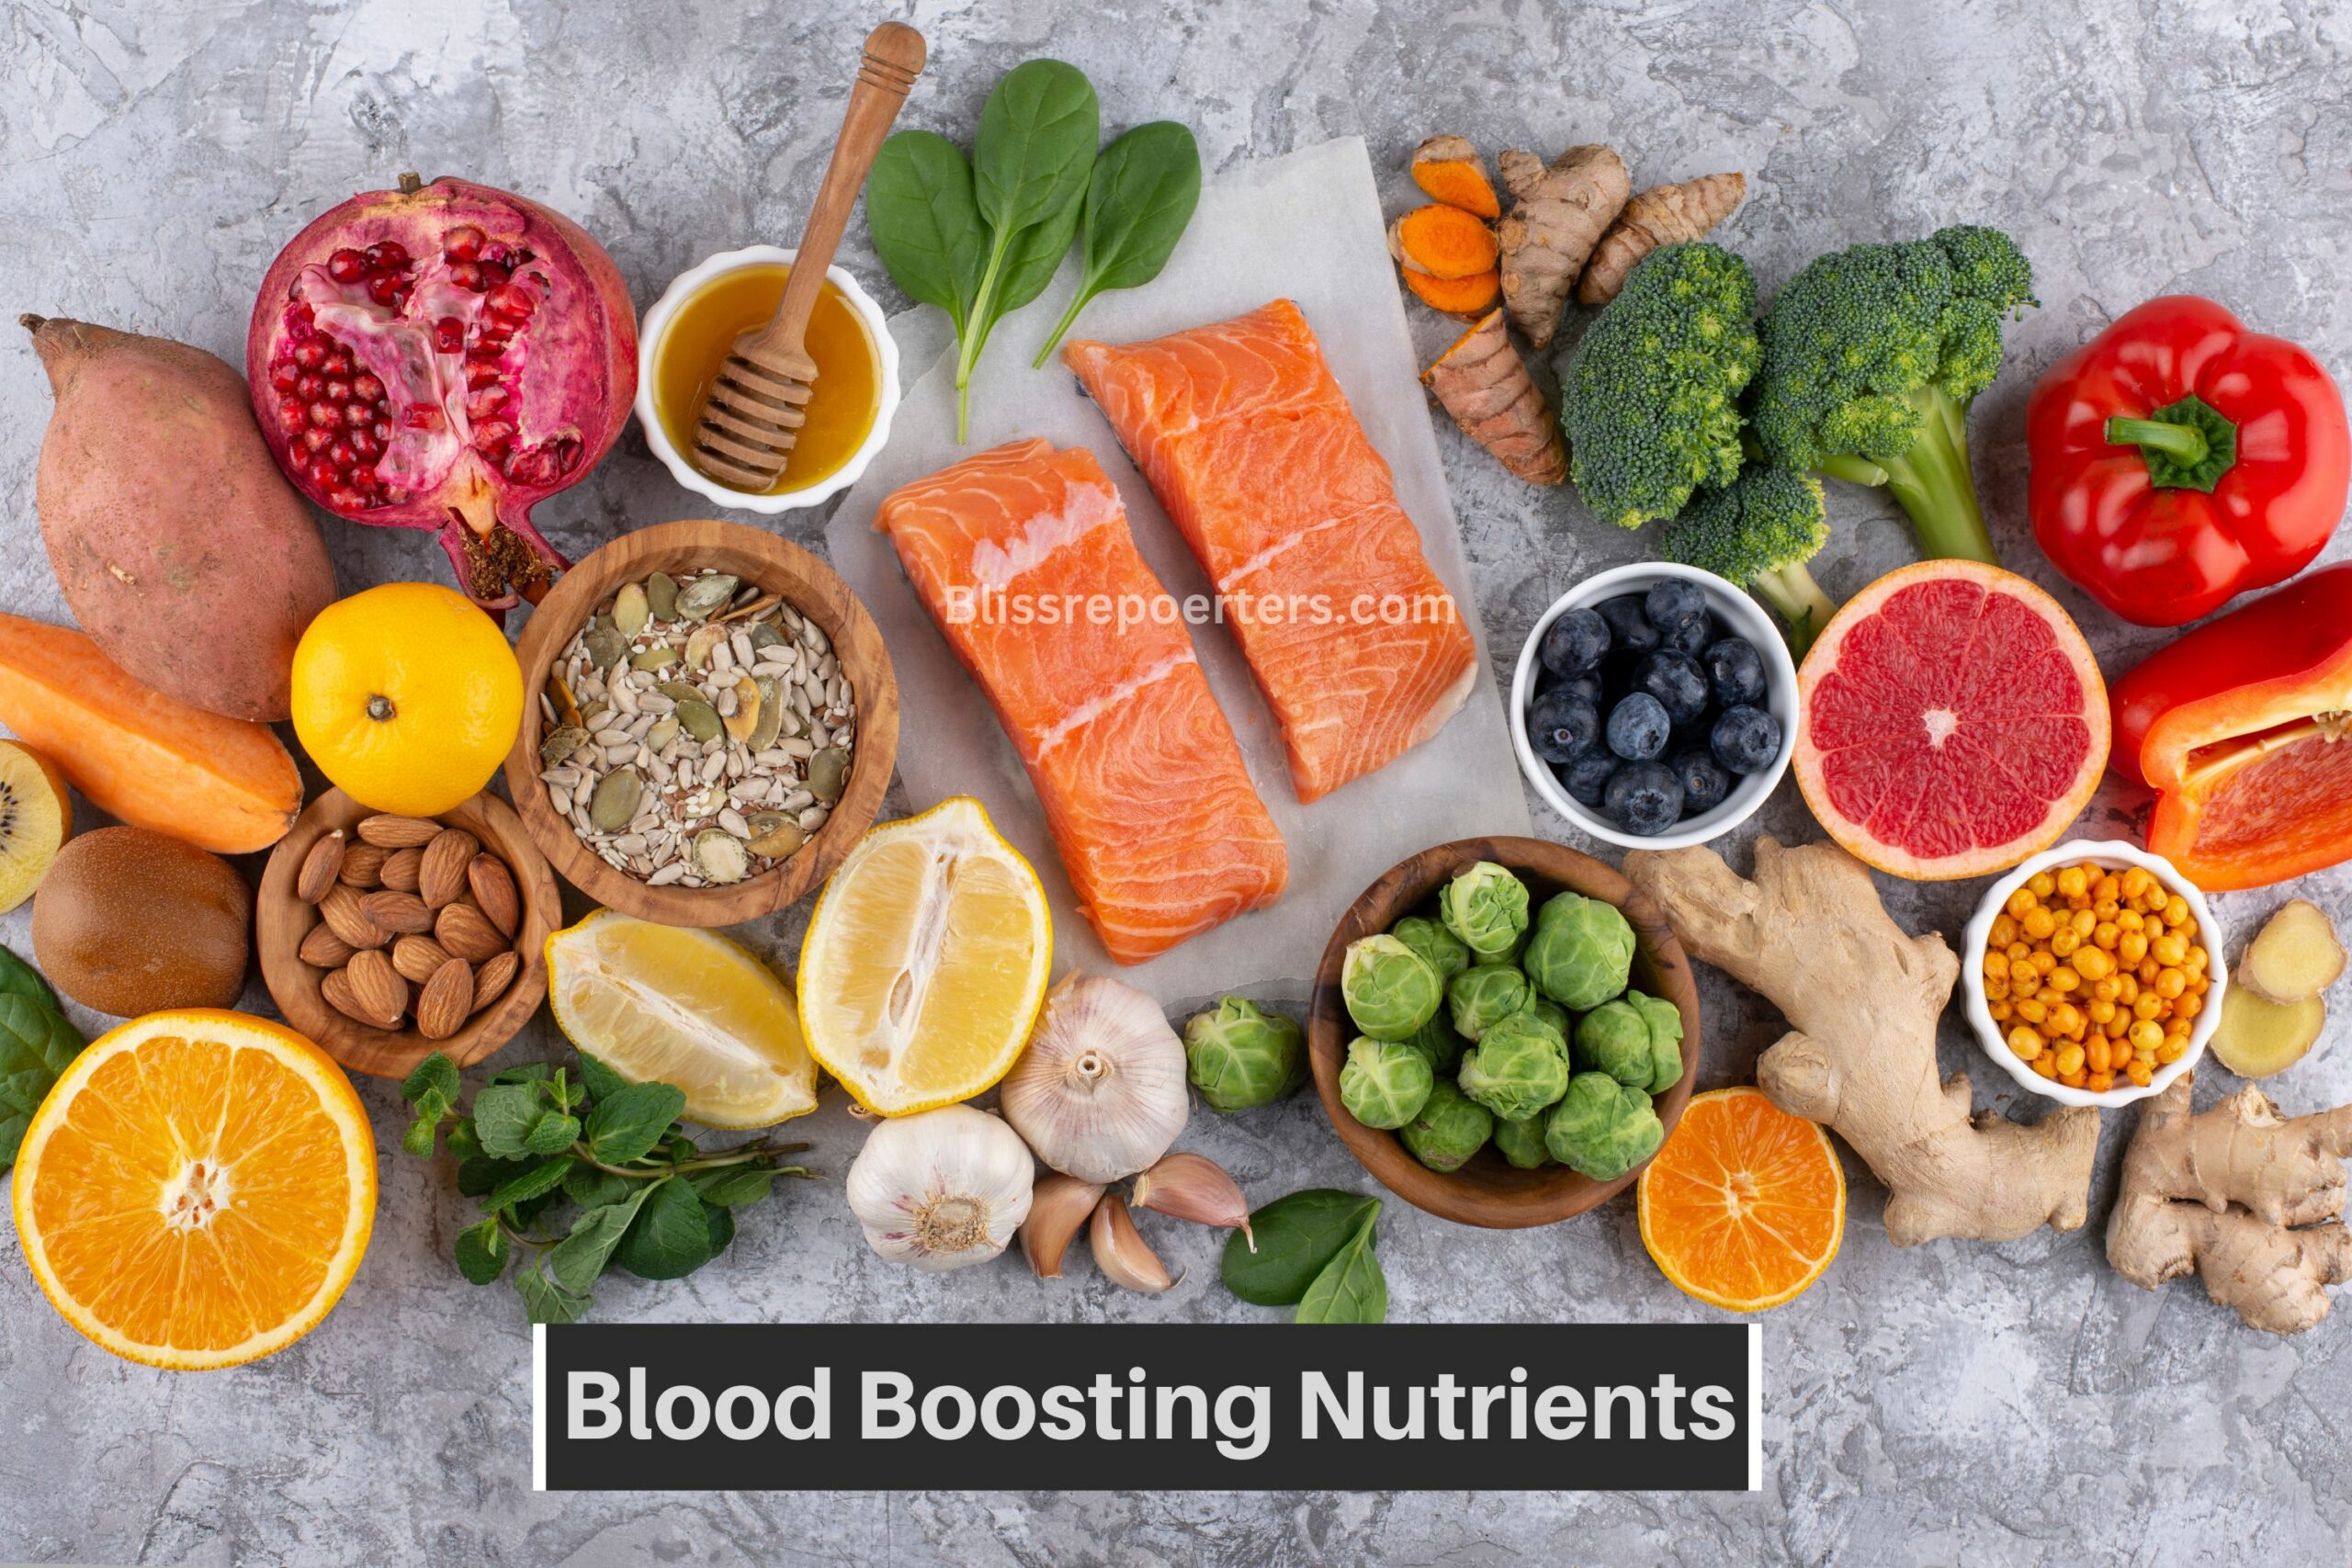 Blood boosting nutrients